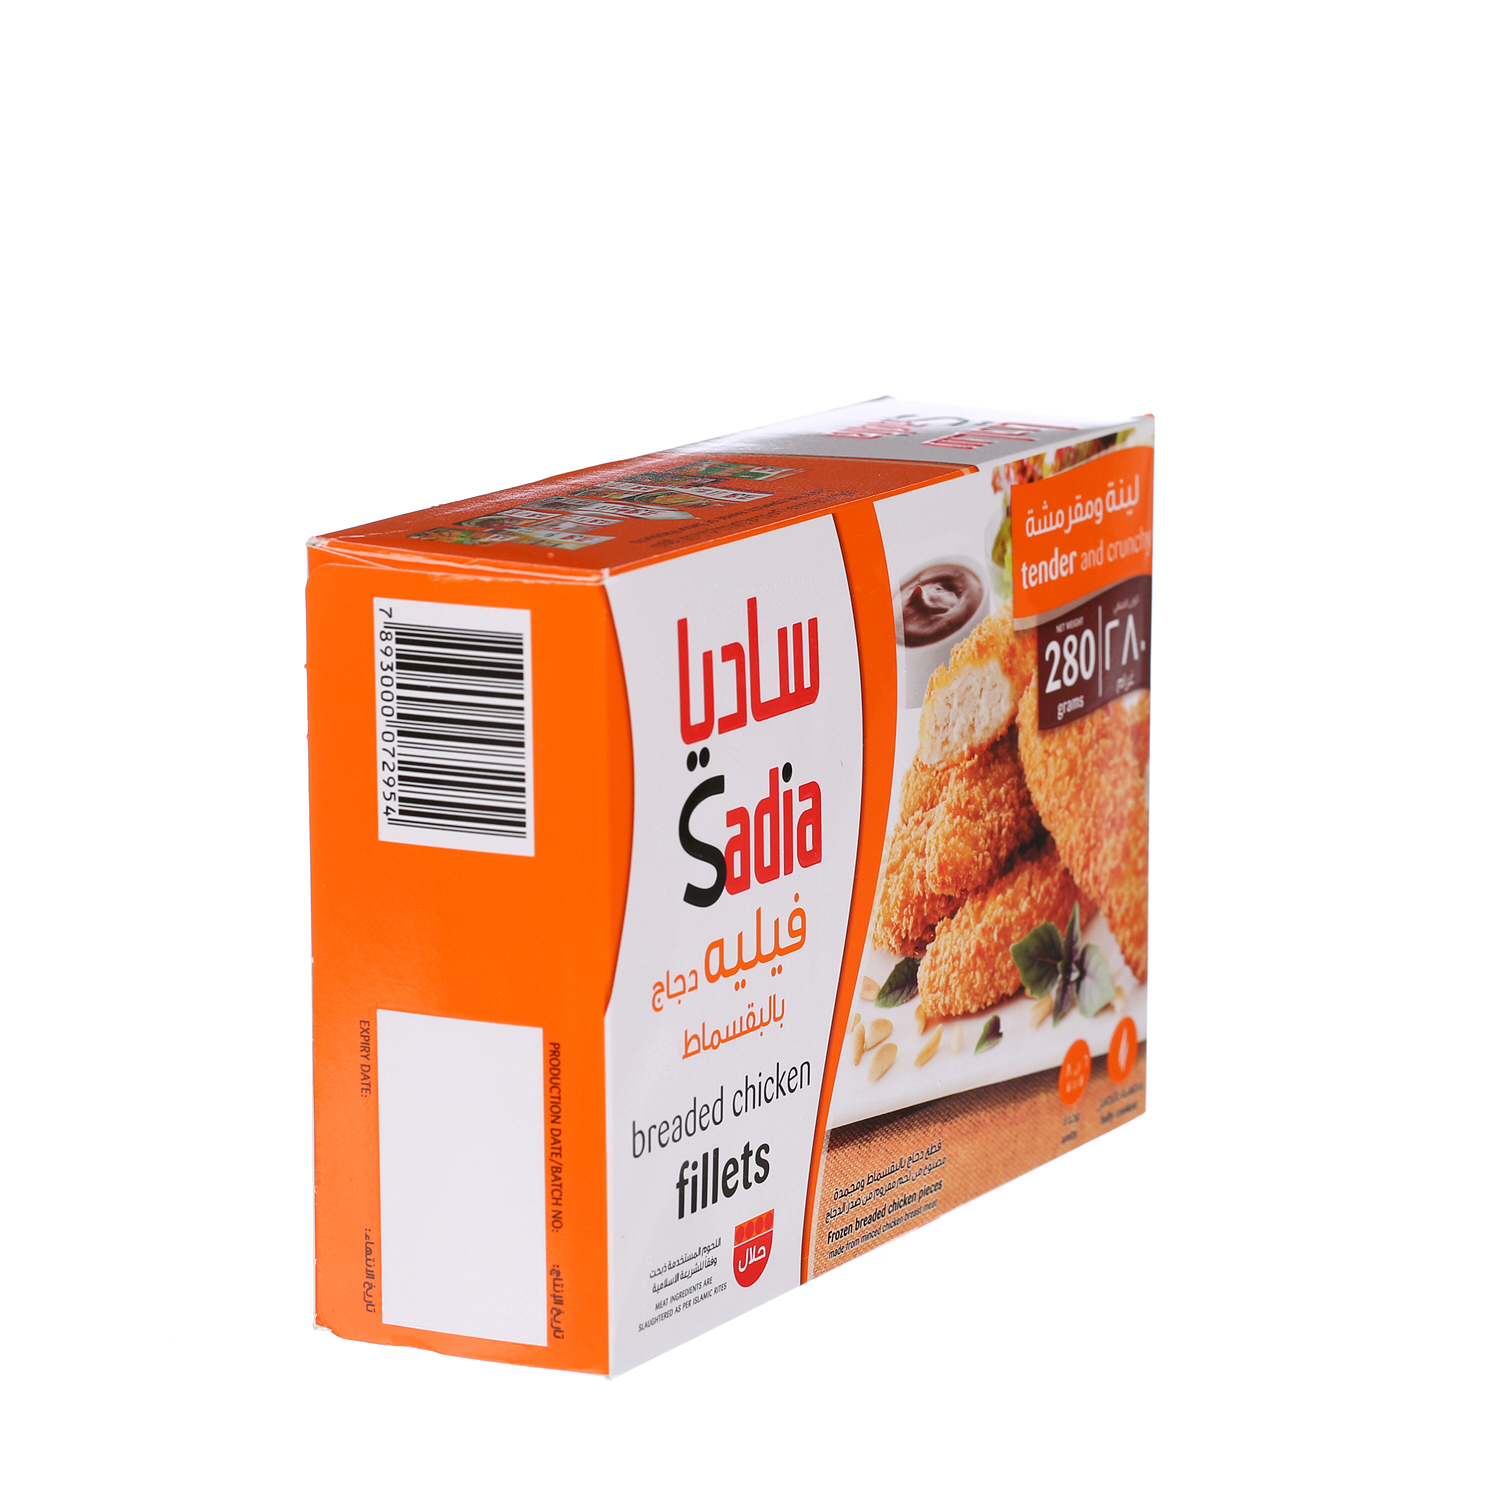 Sadia Breaded Chicken Fillets 280 g